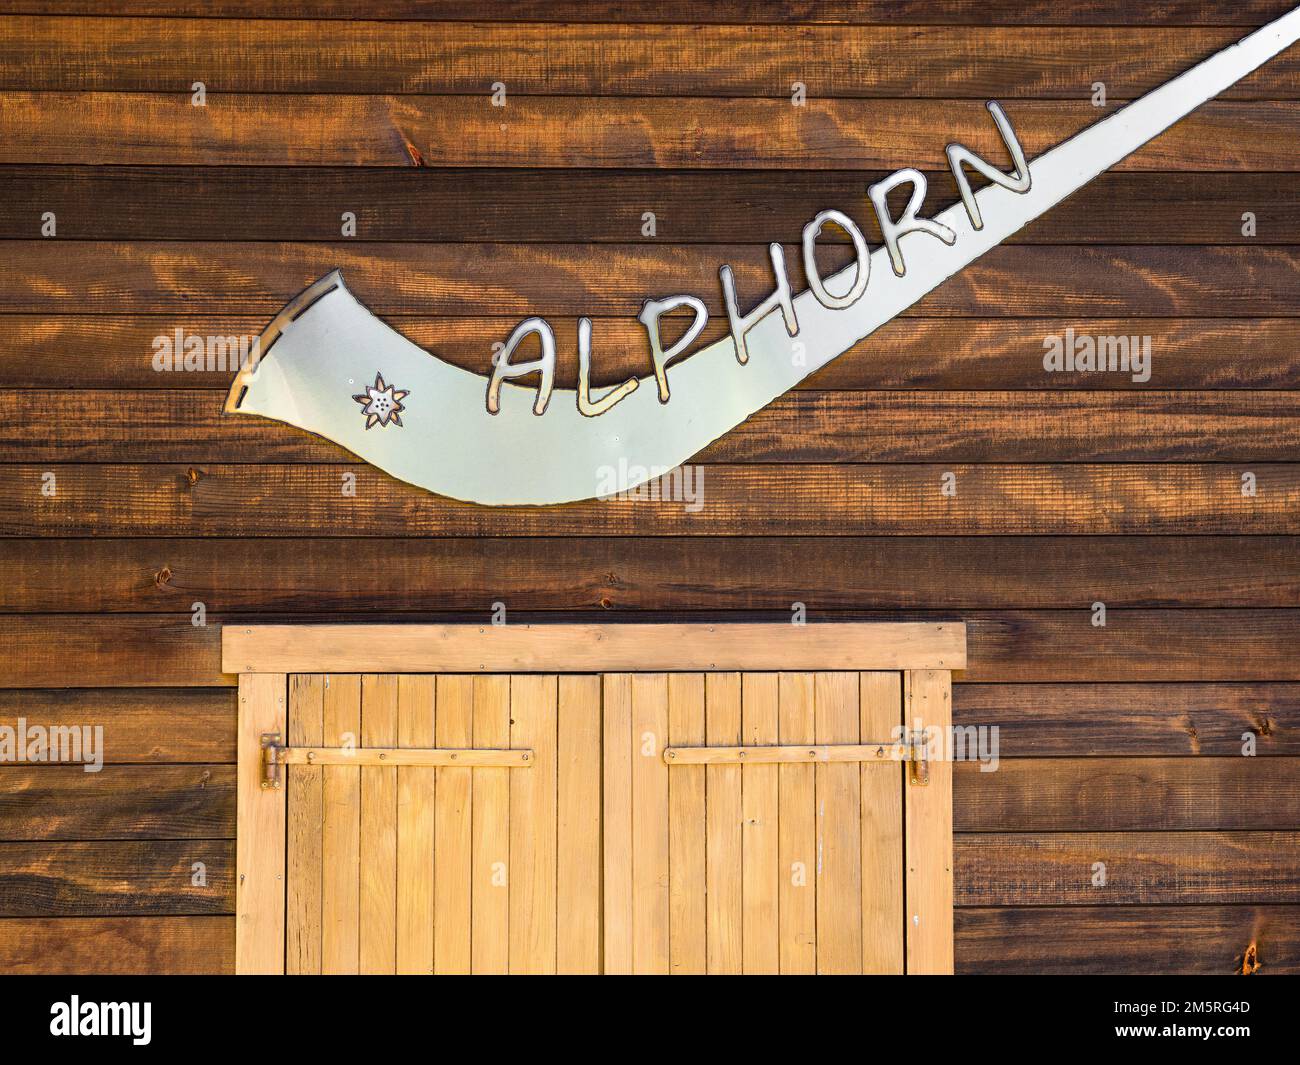 Bettmeralp, Svizzera - 16 luglio 2022: Strumento Alphorn o alpenhorn o corno alpino è un labrofone, costituito da un diritto lungo diversi metri w Foto Stock